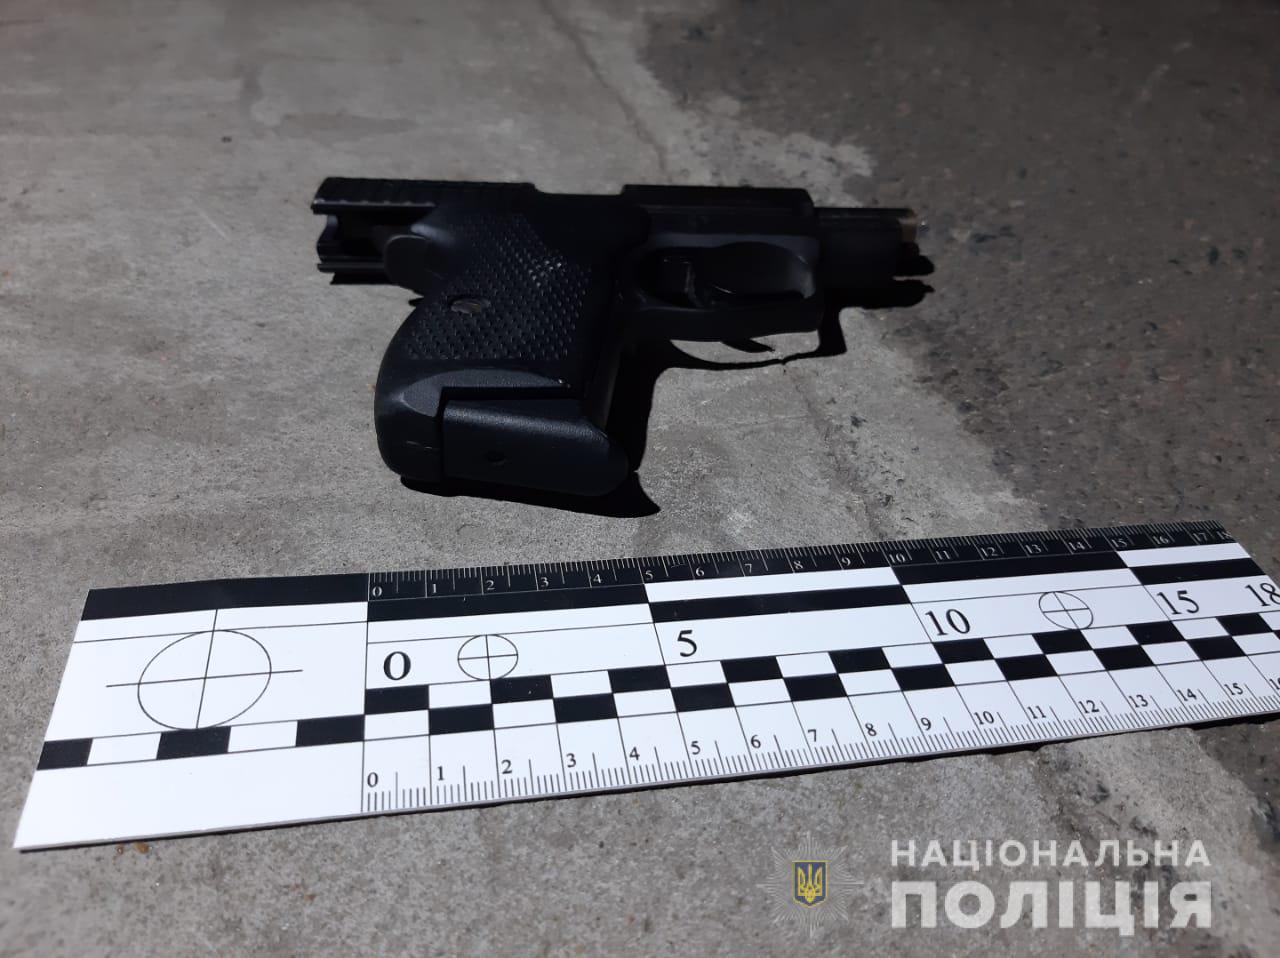 Последствия стрельбы в ресторане Одессы. Фото: Нацполиция